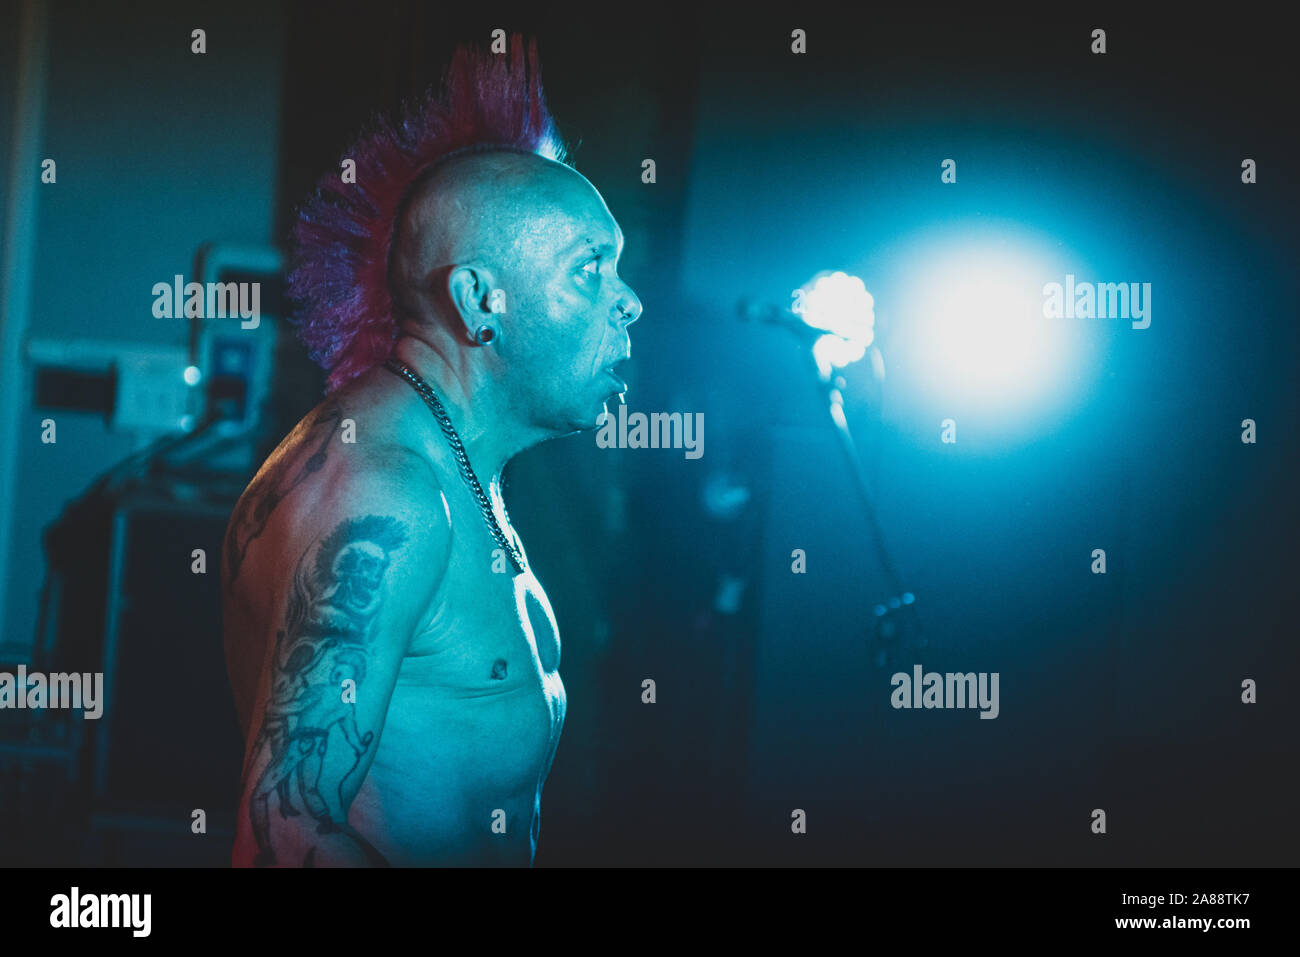 SPAZIO POLIVALENTE, Caramagna Piemonte, ITALIE - 2019/11/06 : La chanteuse de rock punk écossais Walter' 'Wattie Buchan, leader de la "bande", spectacle sur scène Banque D'Images